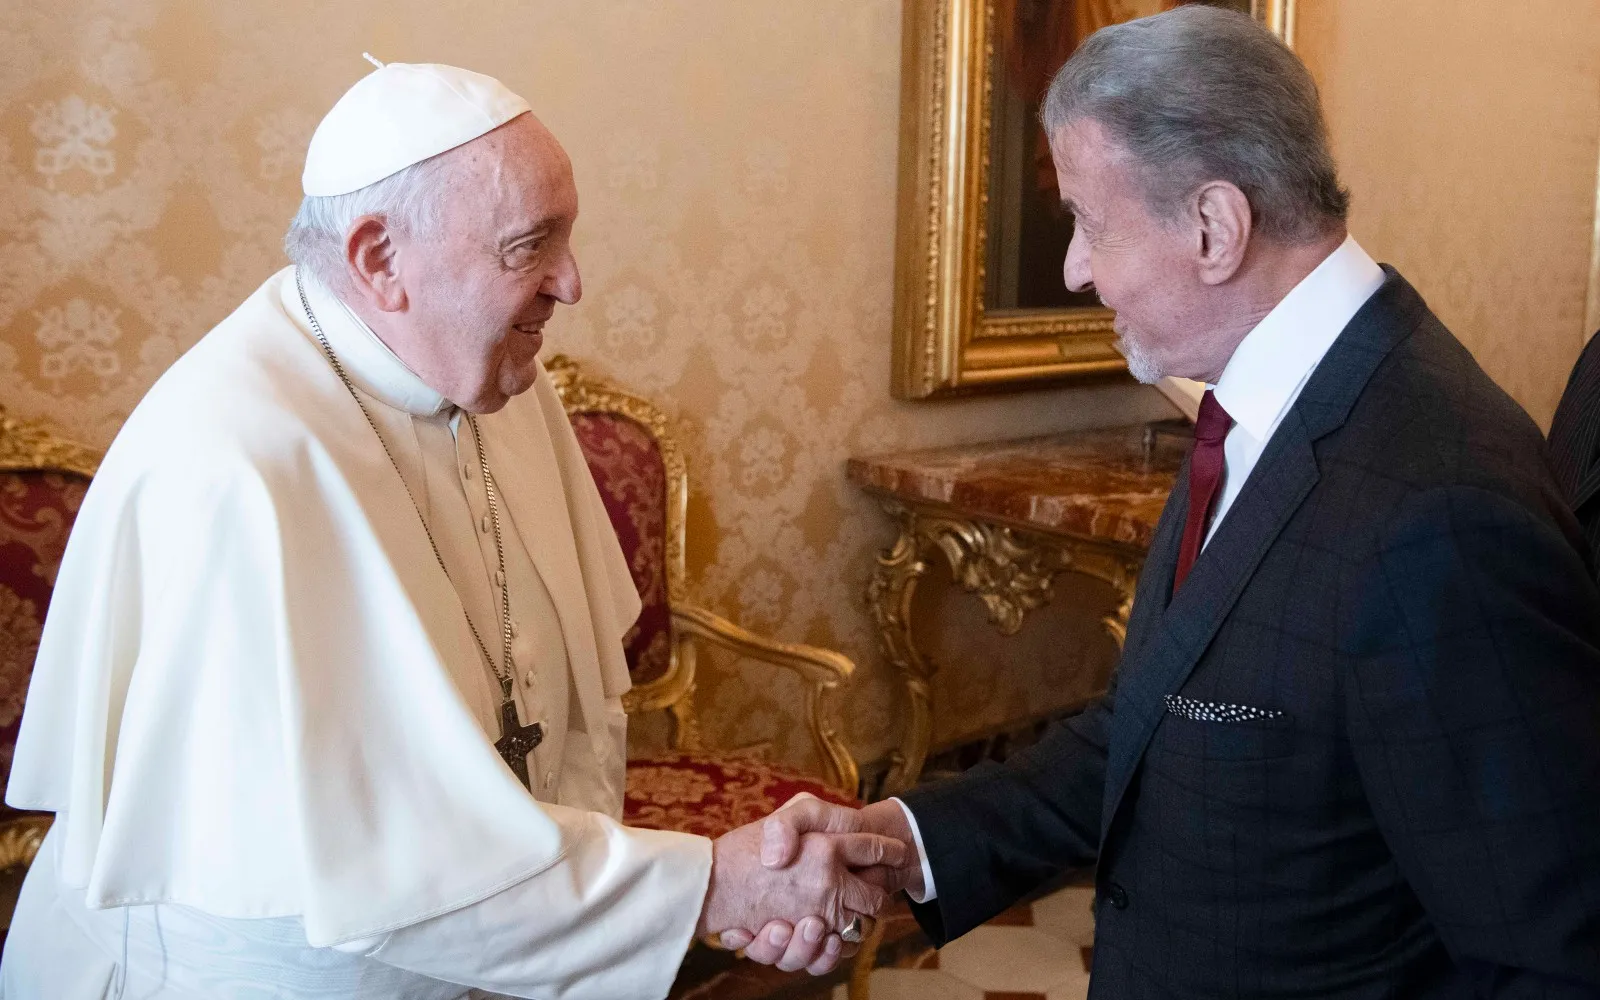 El Papa Francisco recibe al actor Sylvester Stallone